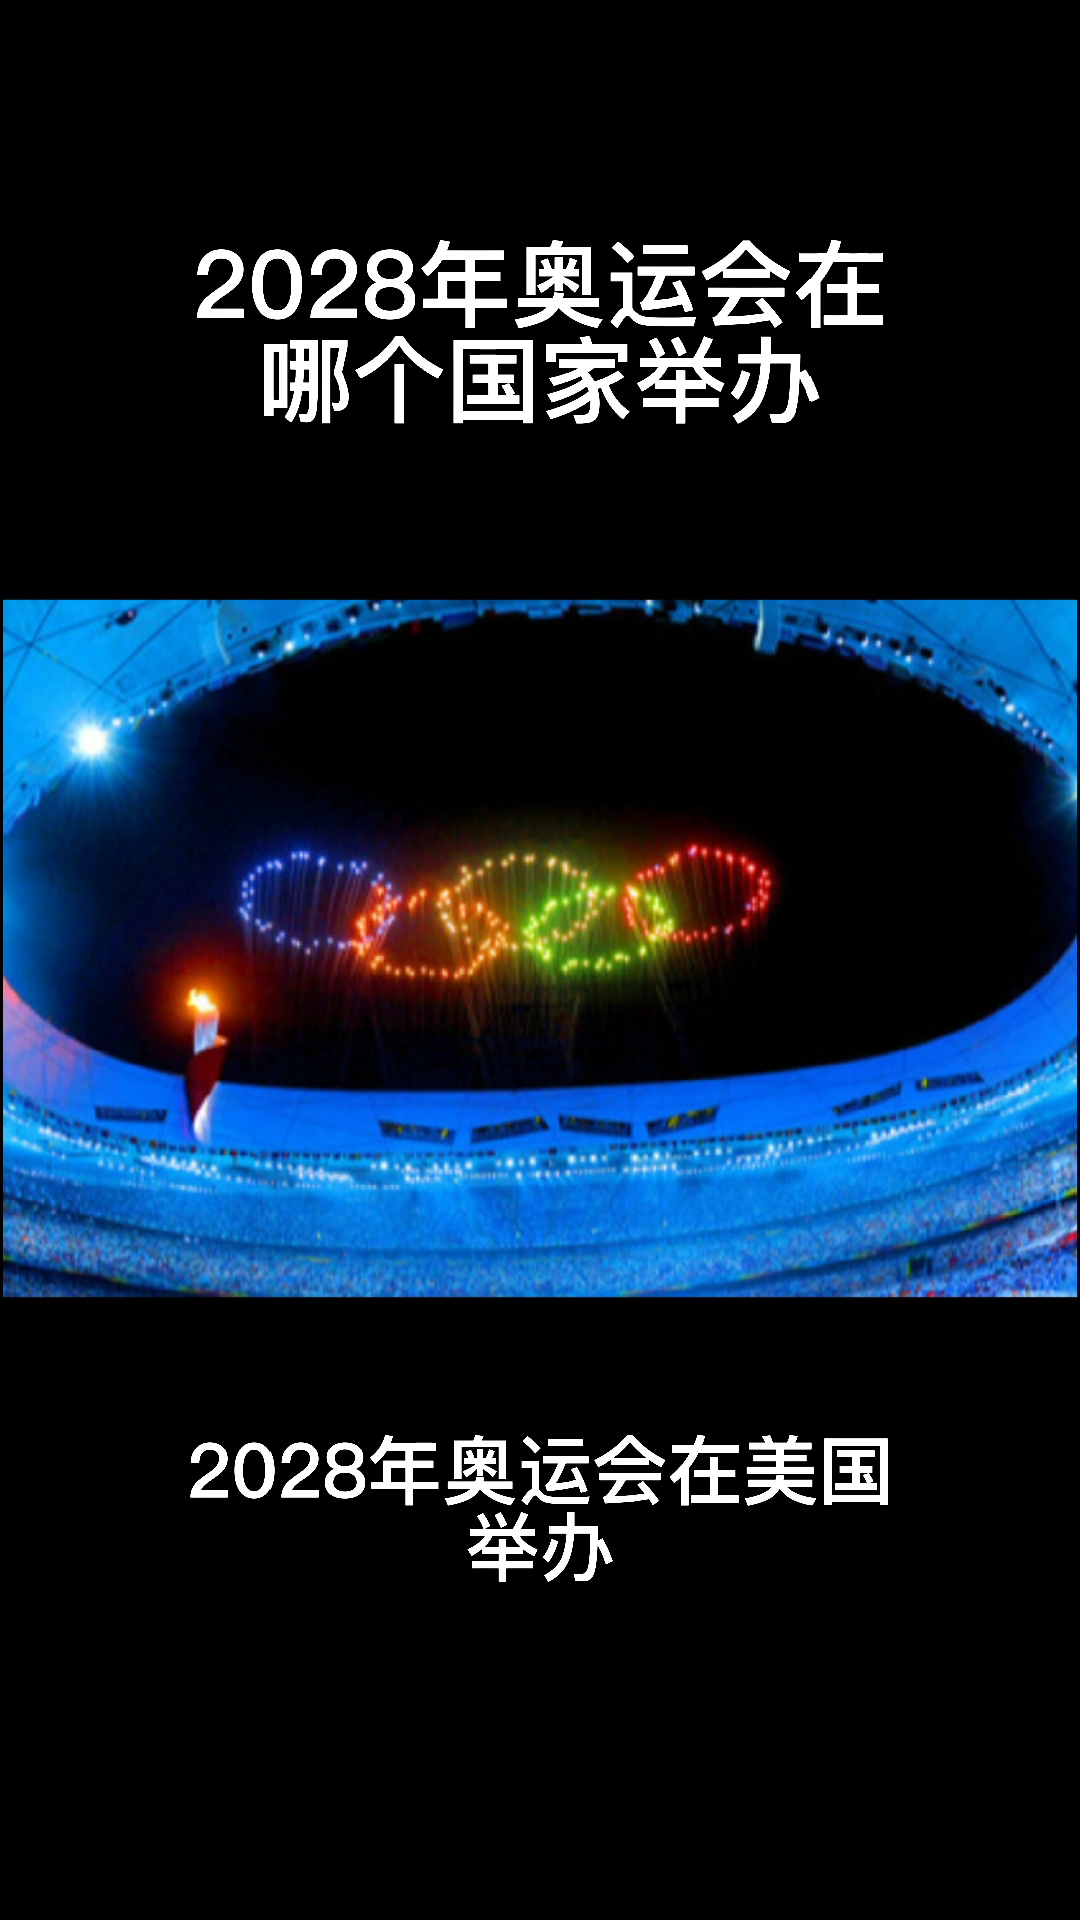 关于2020年奥运会在哪个国家举办的信息